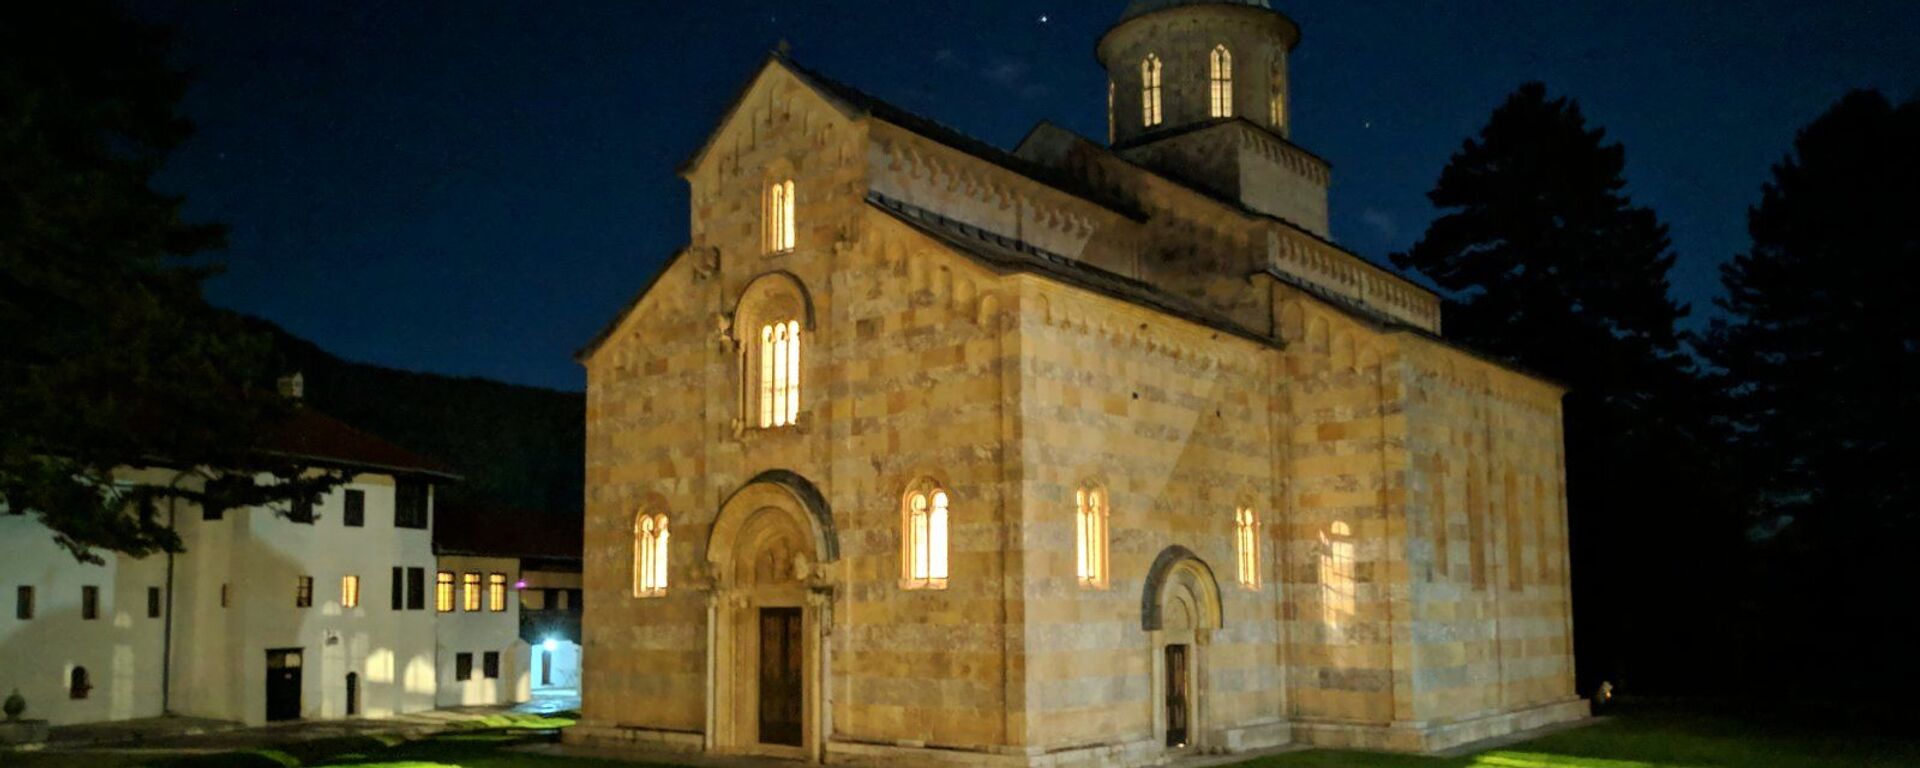 Četiri puta napadan oružano, manastir Viskoki Dečani je najčešće napadan objekat, ne samo Srpske Pravoslavne Crkve, već hrišćanski,na teritoriji Evrope od Drugog svetskog rata. - Sputnik Srbija, 1920, 02.06.2021